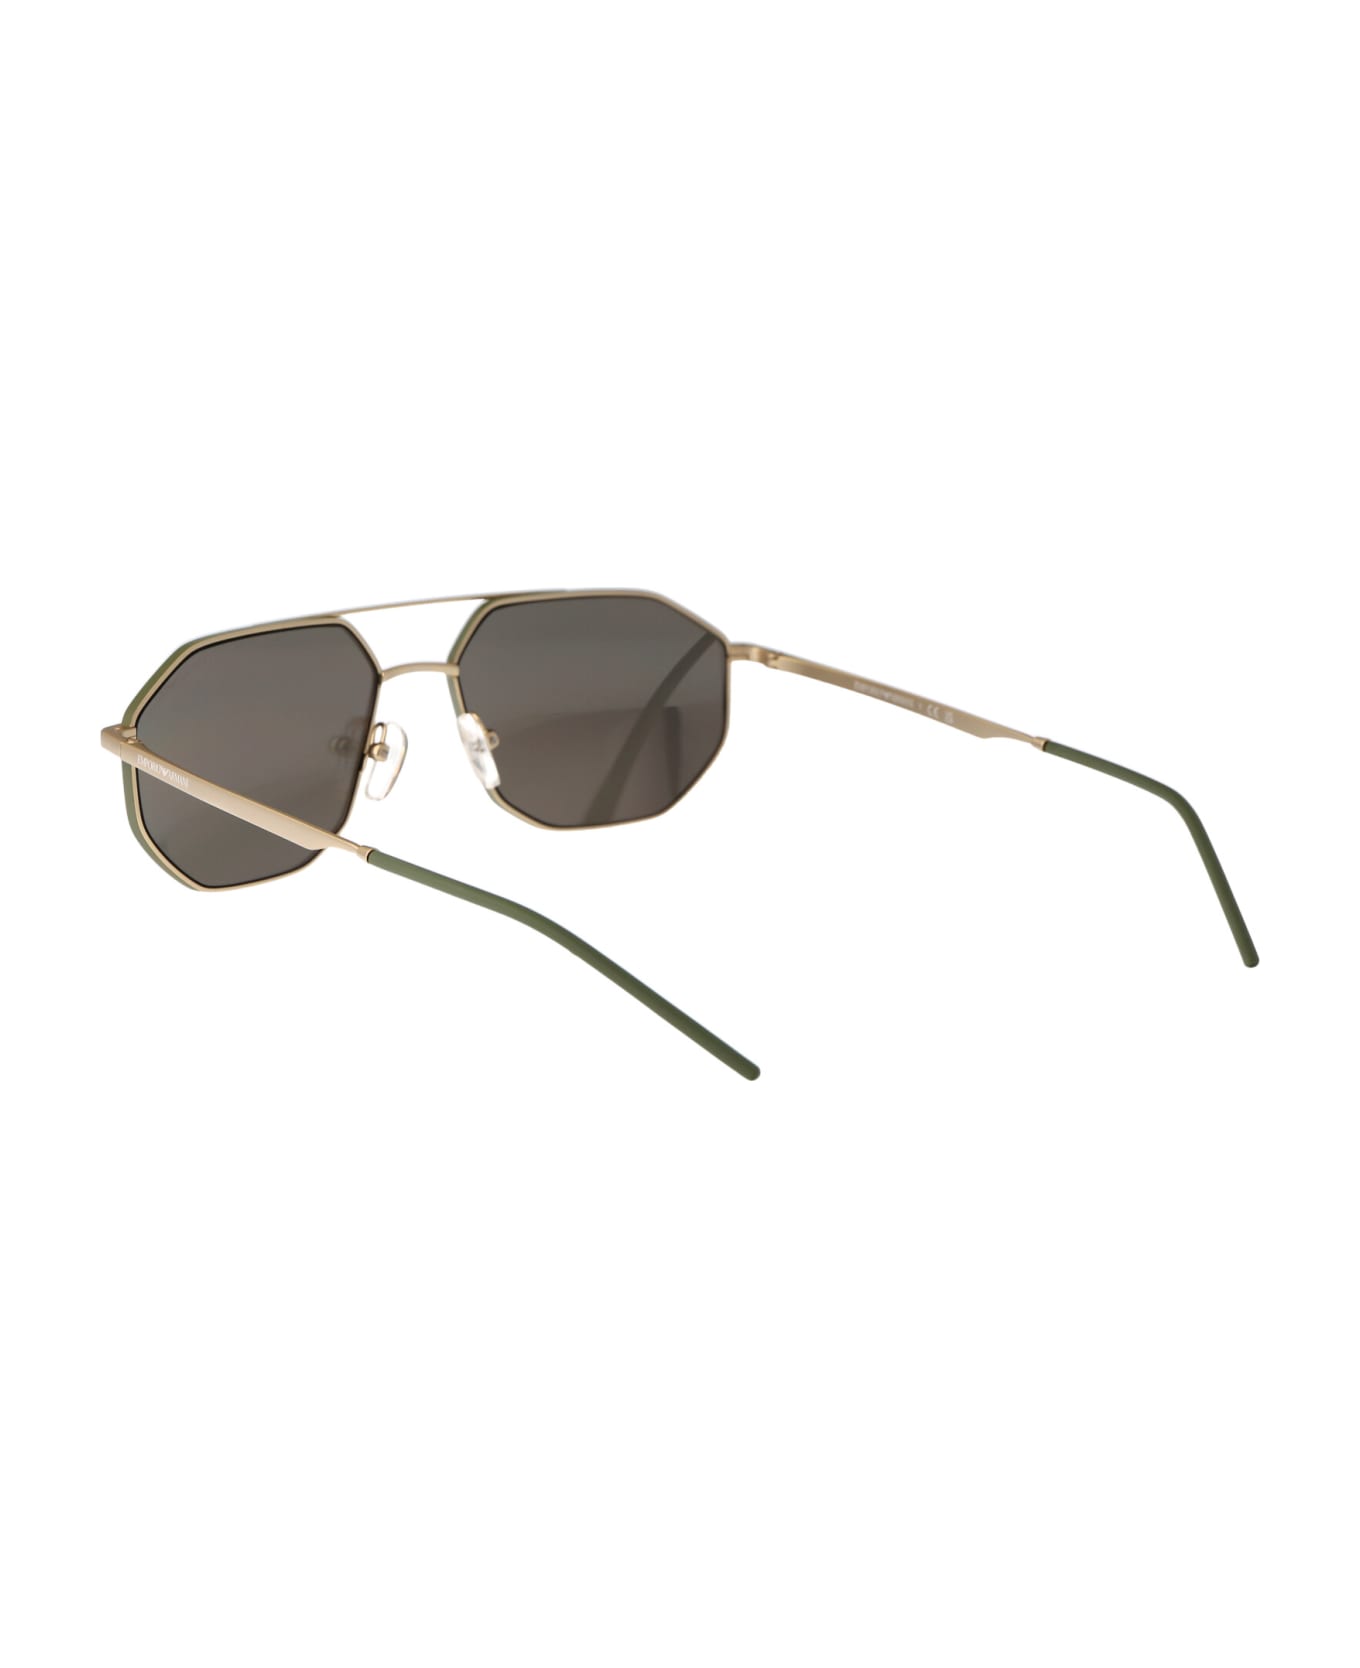 Emporio Armani 0ea2147 Sunglasses - 30025A Matte Gold